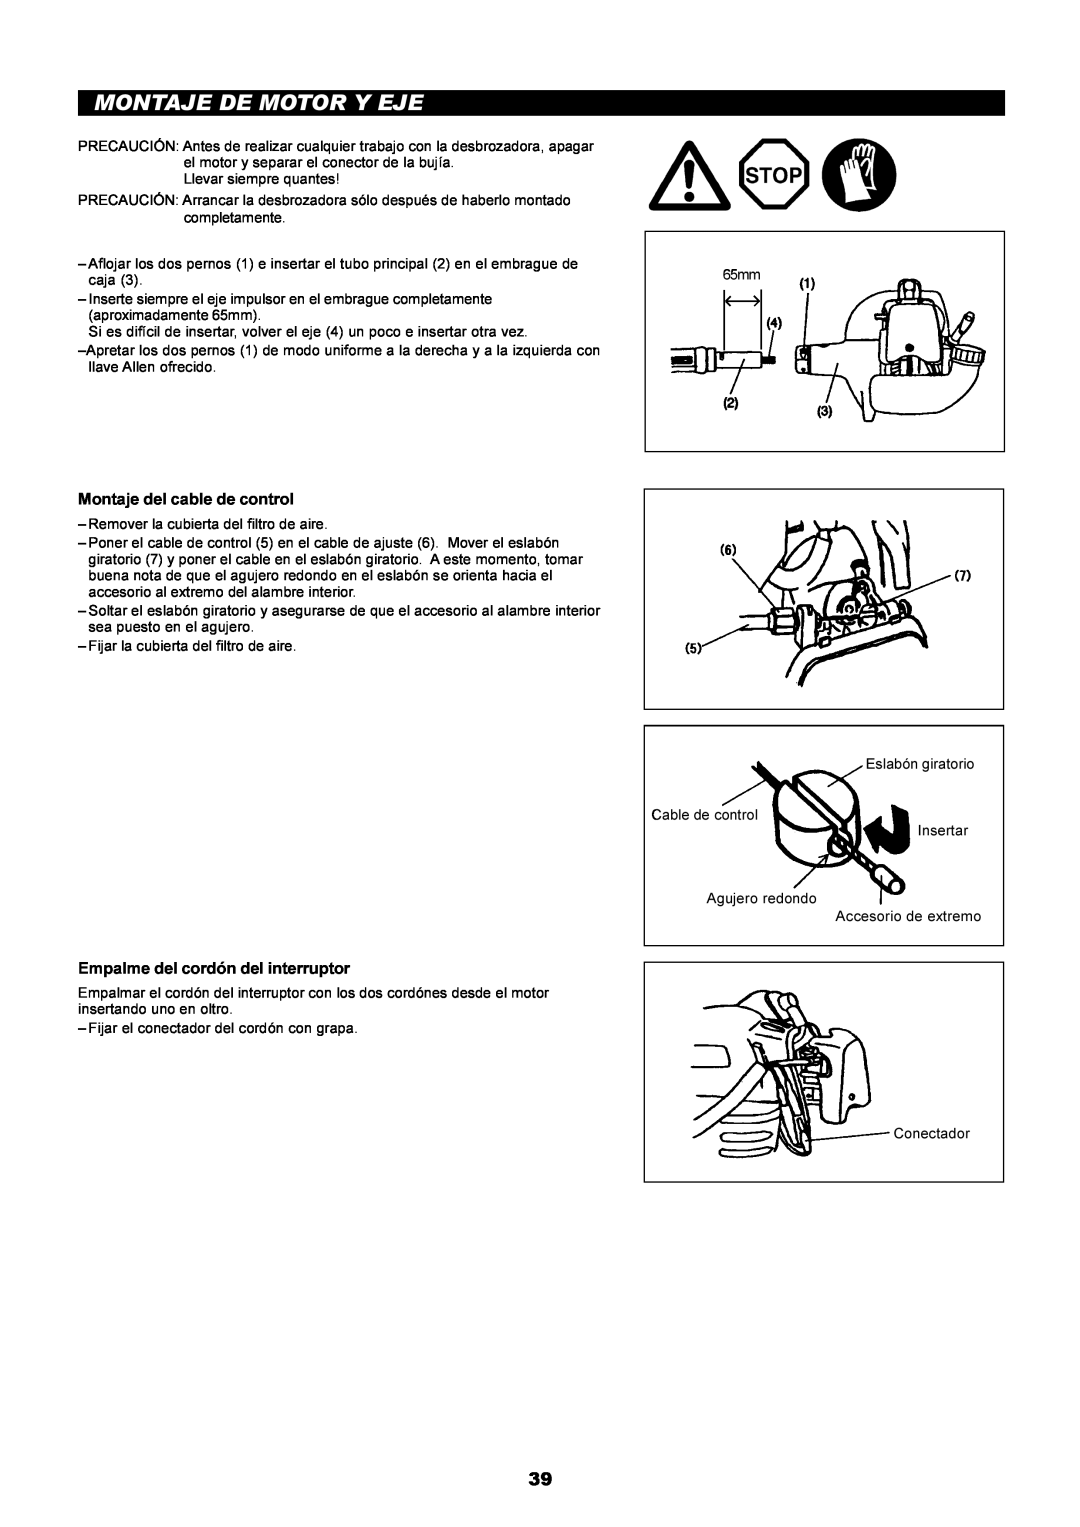 Dolmar PE-251 instruction manual Montaje De Motor Y Eje, Montaje del cable de control, Empalme del cordón del interruptor 